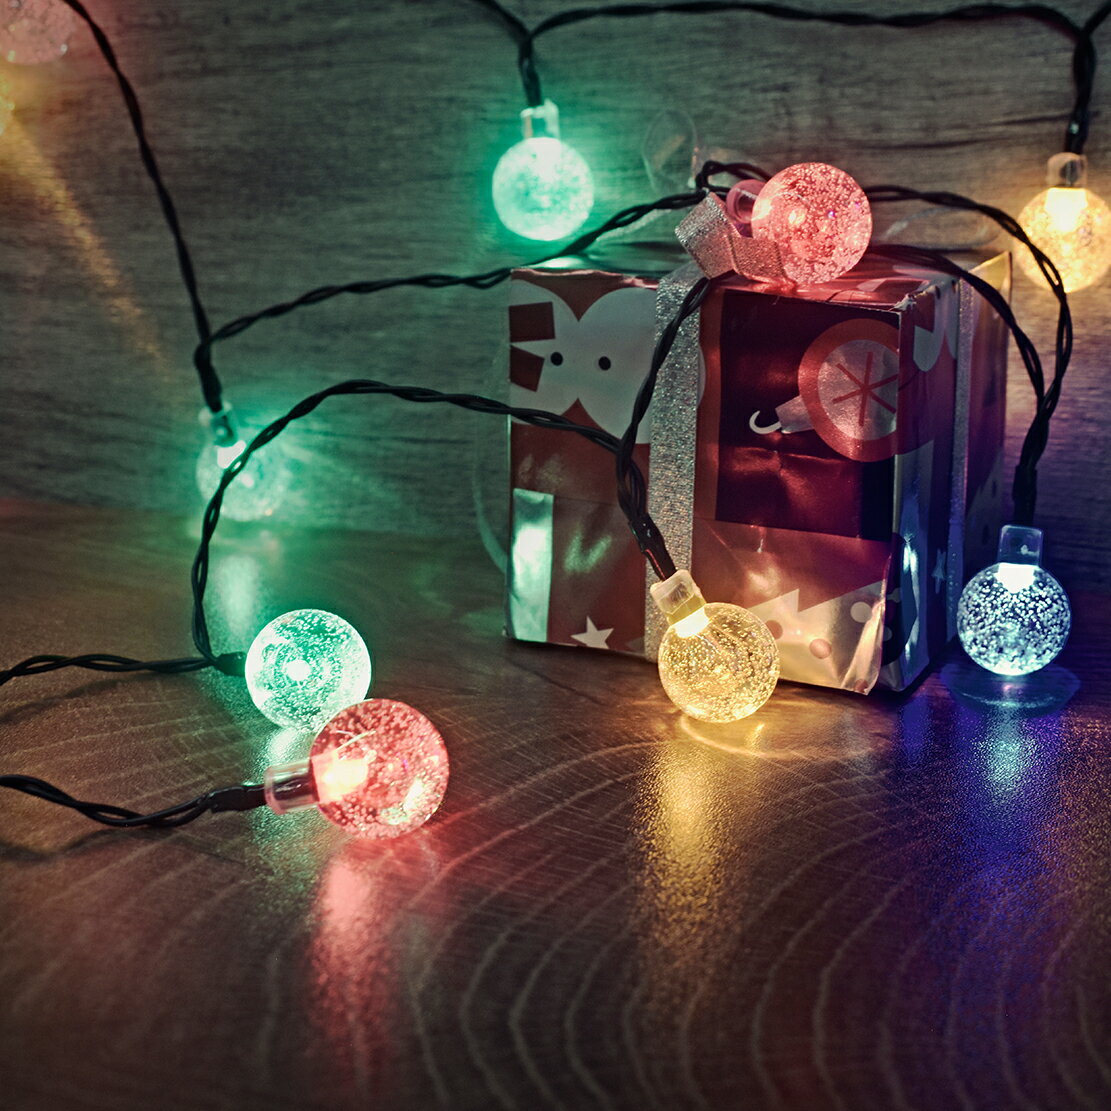 【Treewalker露遊】LED氣泡燈串-USB彩光 造型燈串 LED燈串 聖誕燈 氣氛燈 球球燈 露營居家戶外